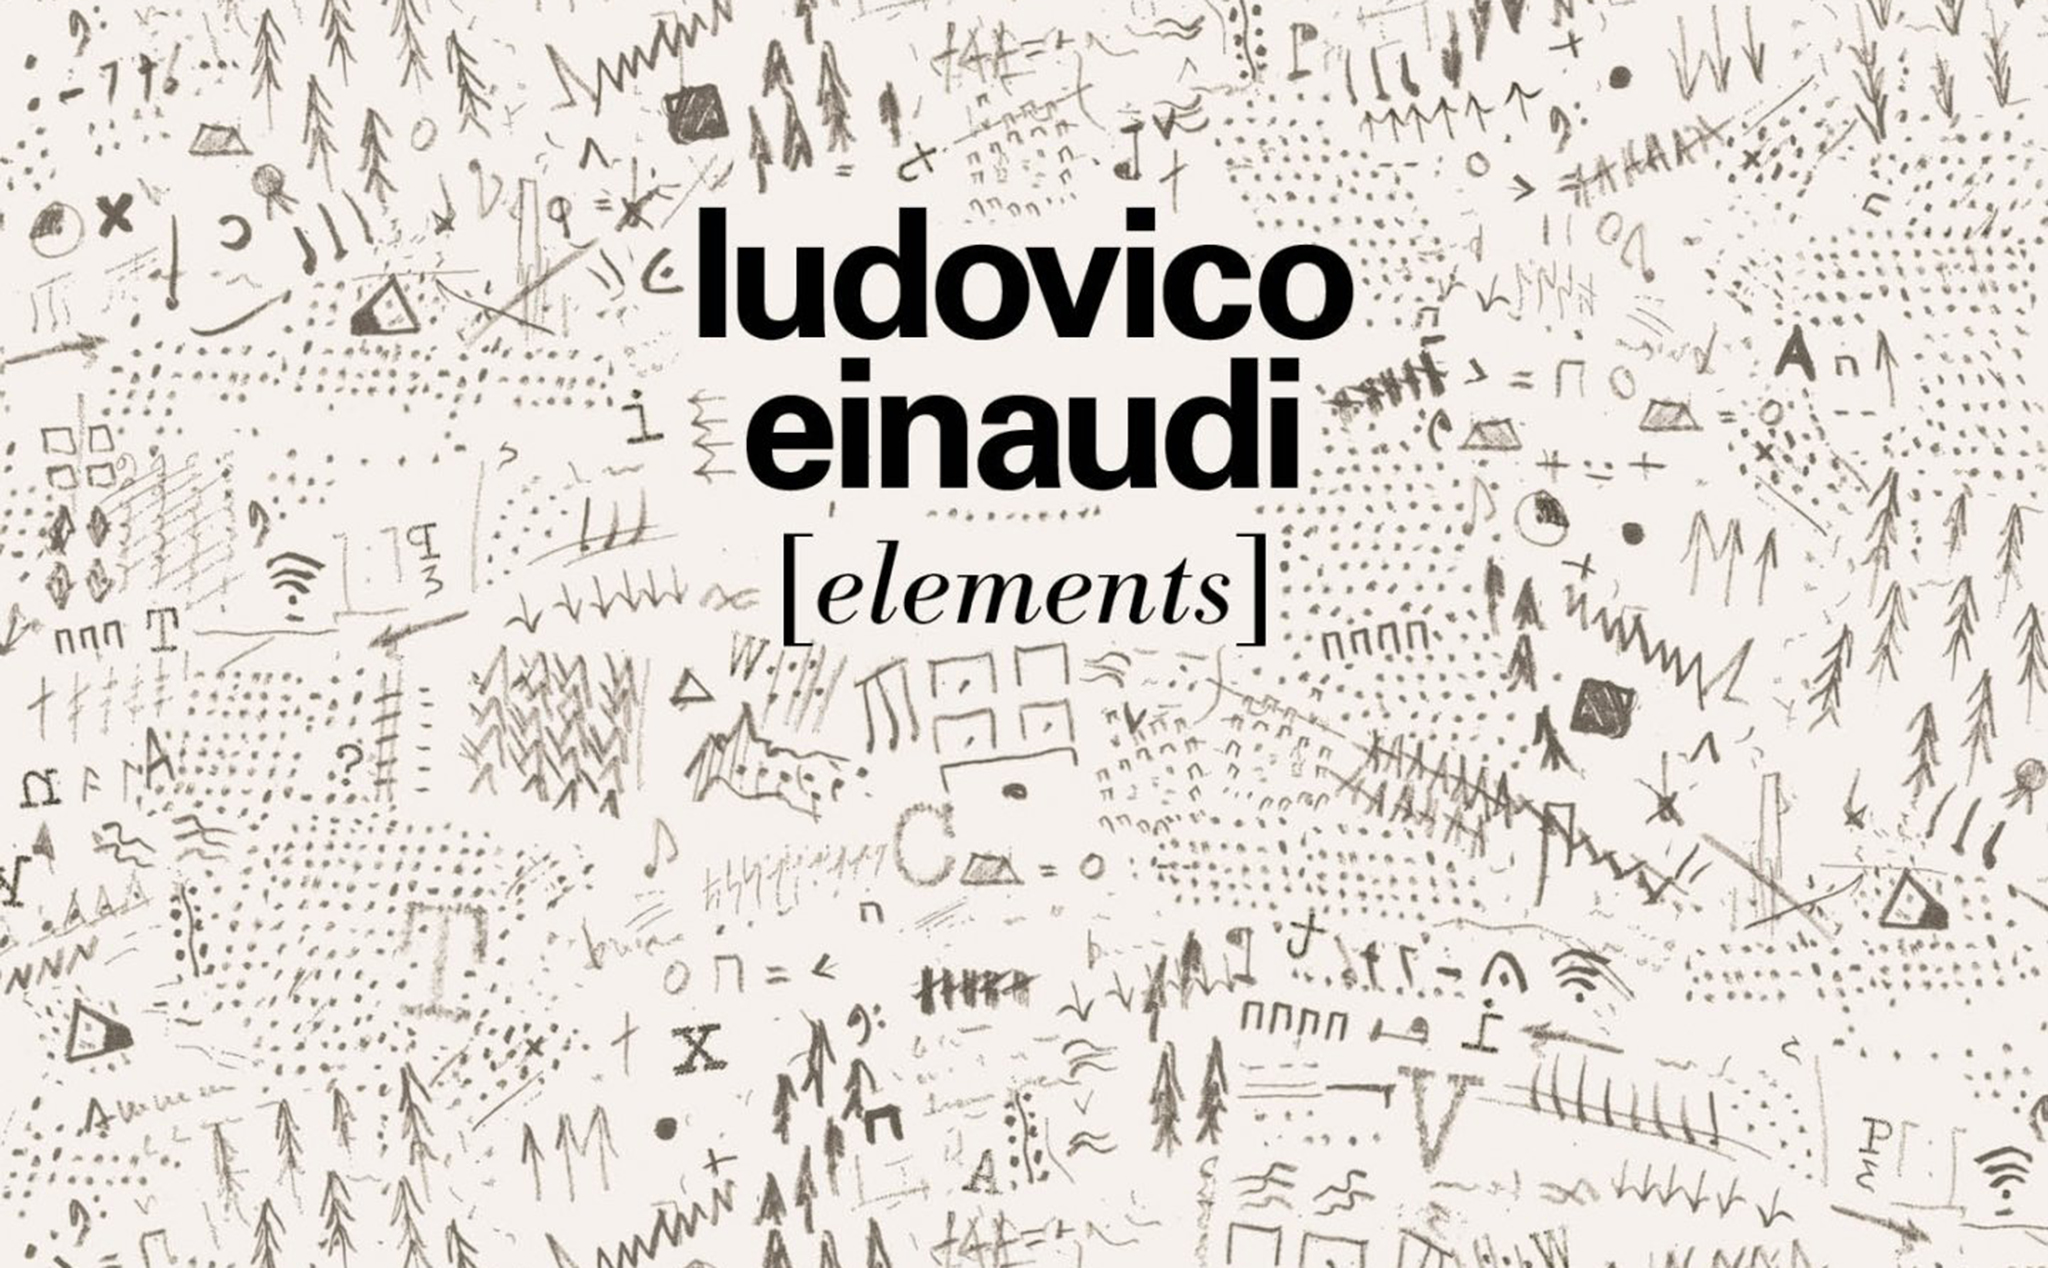 Anh em có biết đến nhà soạn nhạc dương cầm Ludovico Einaudi?